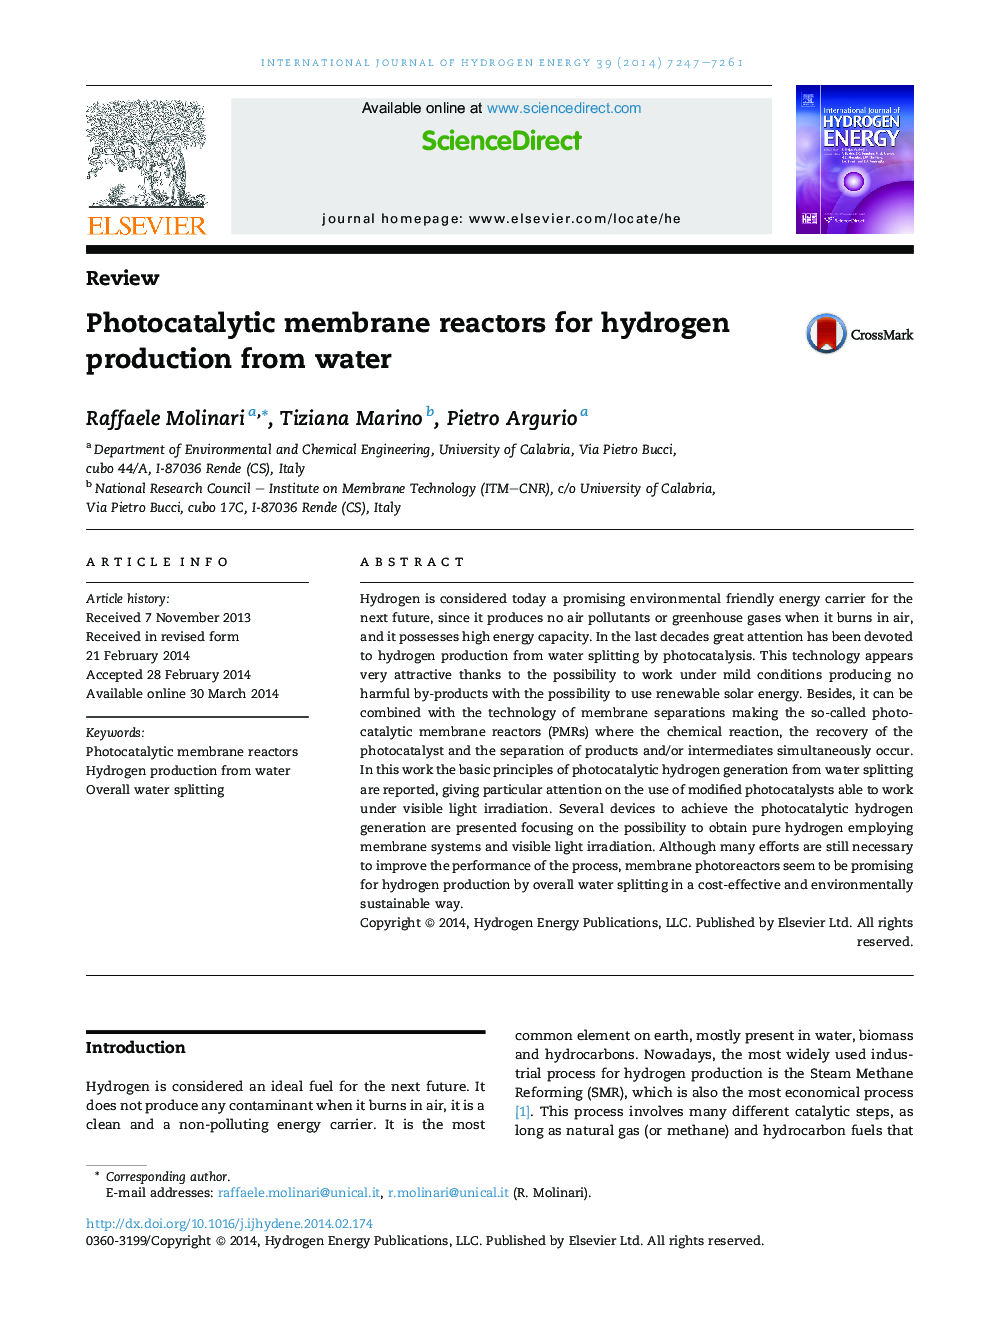 راکتورهای غشایی فوتوکاتالیستی برای تولید هیدروژن از آب است 